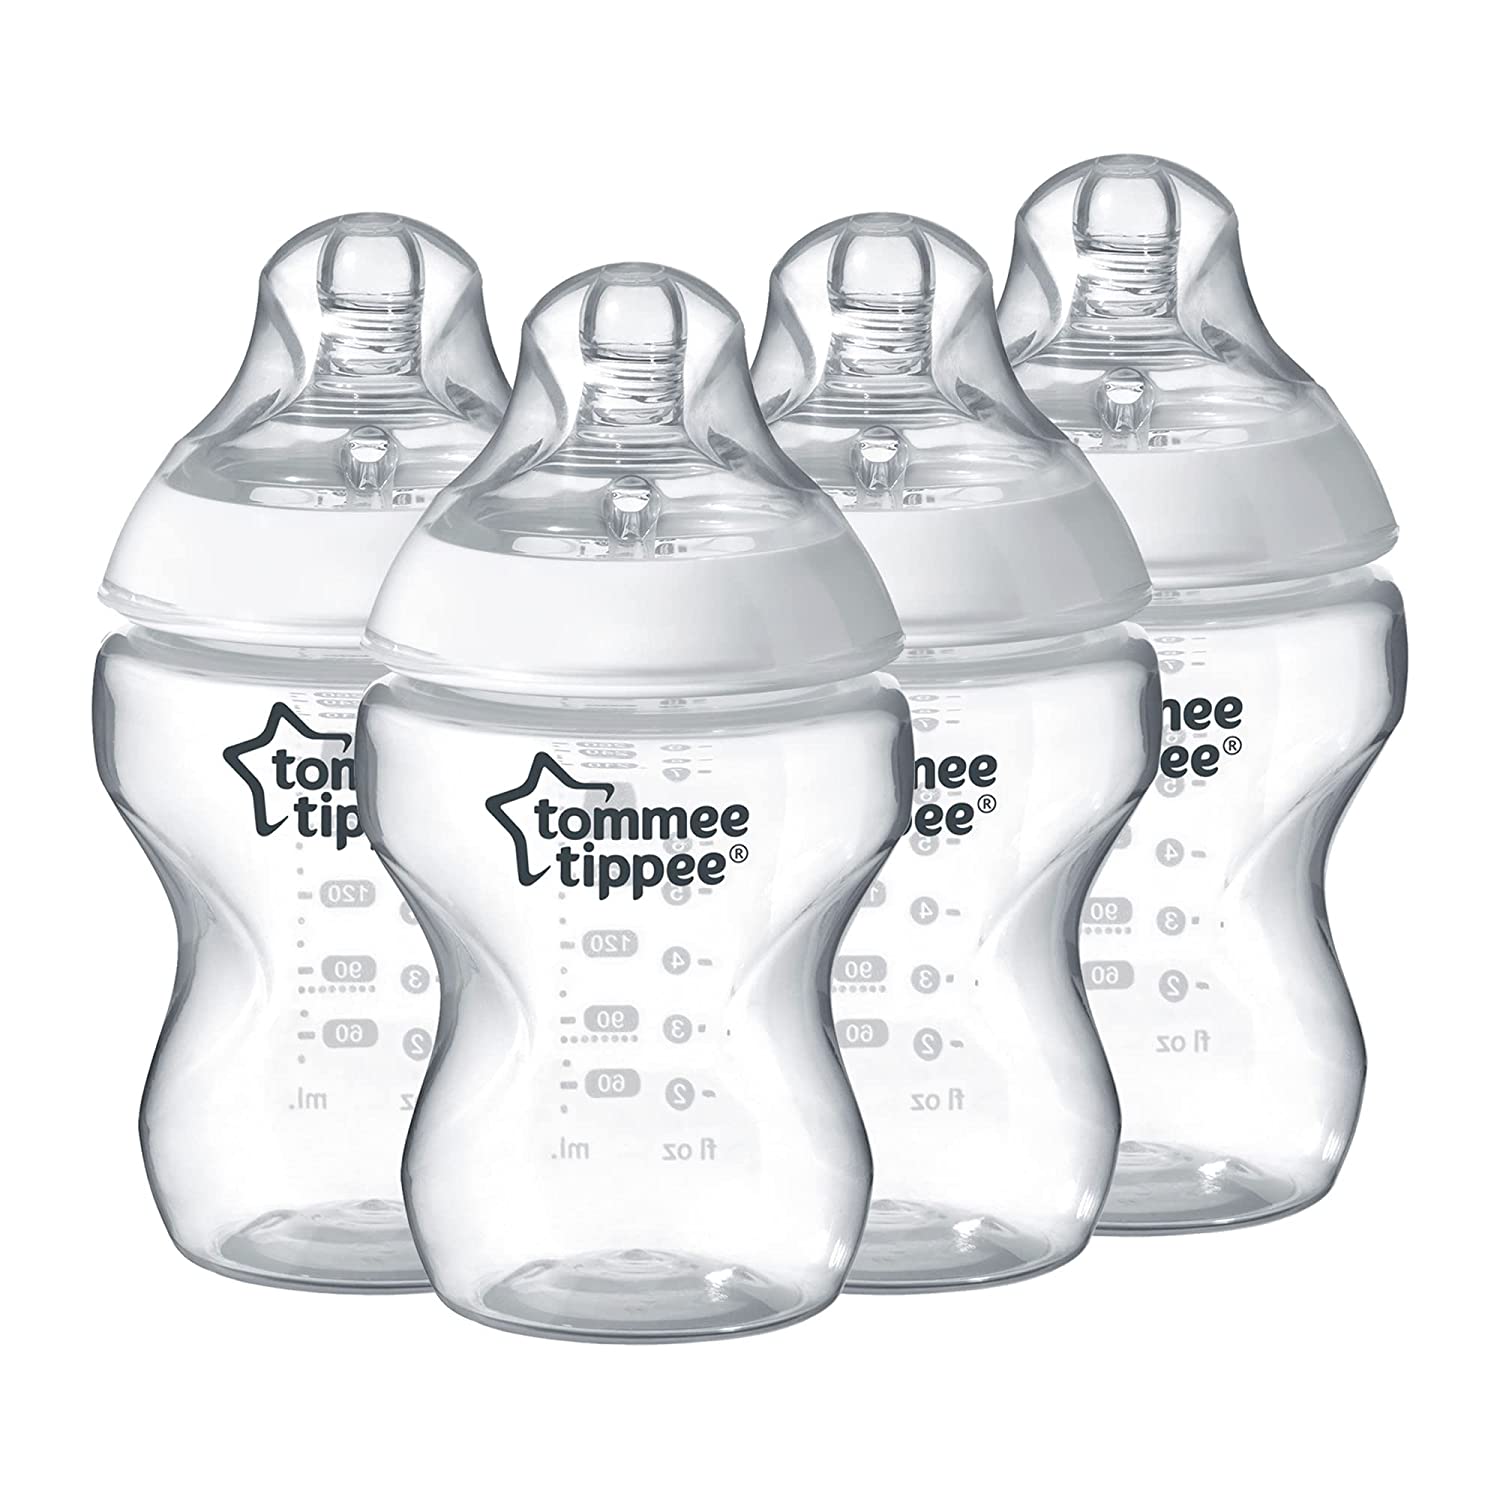 top baby bottles